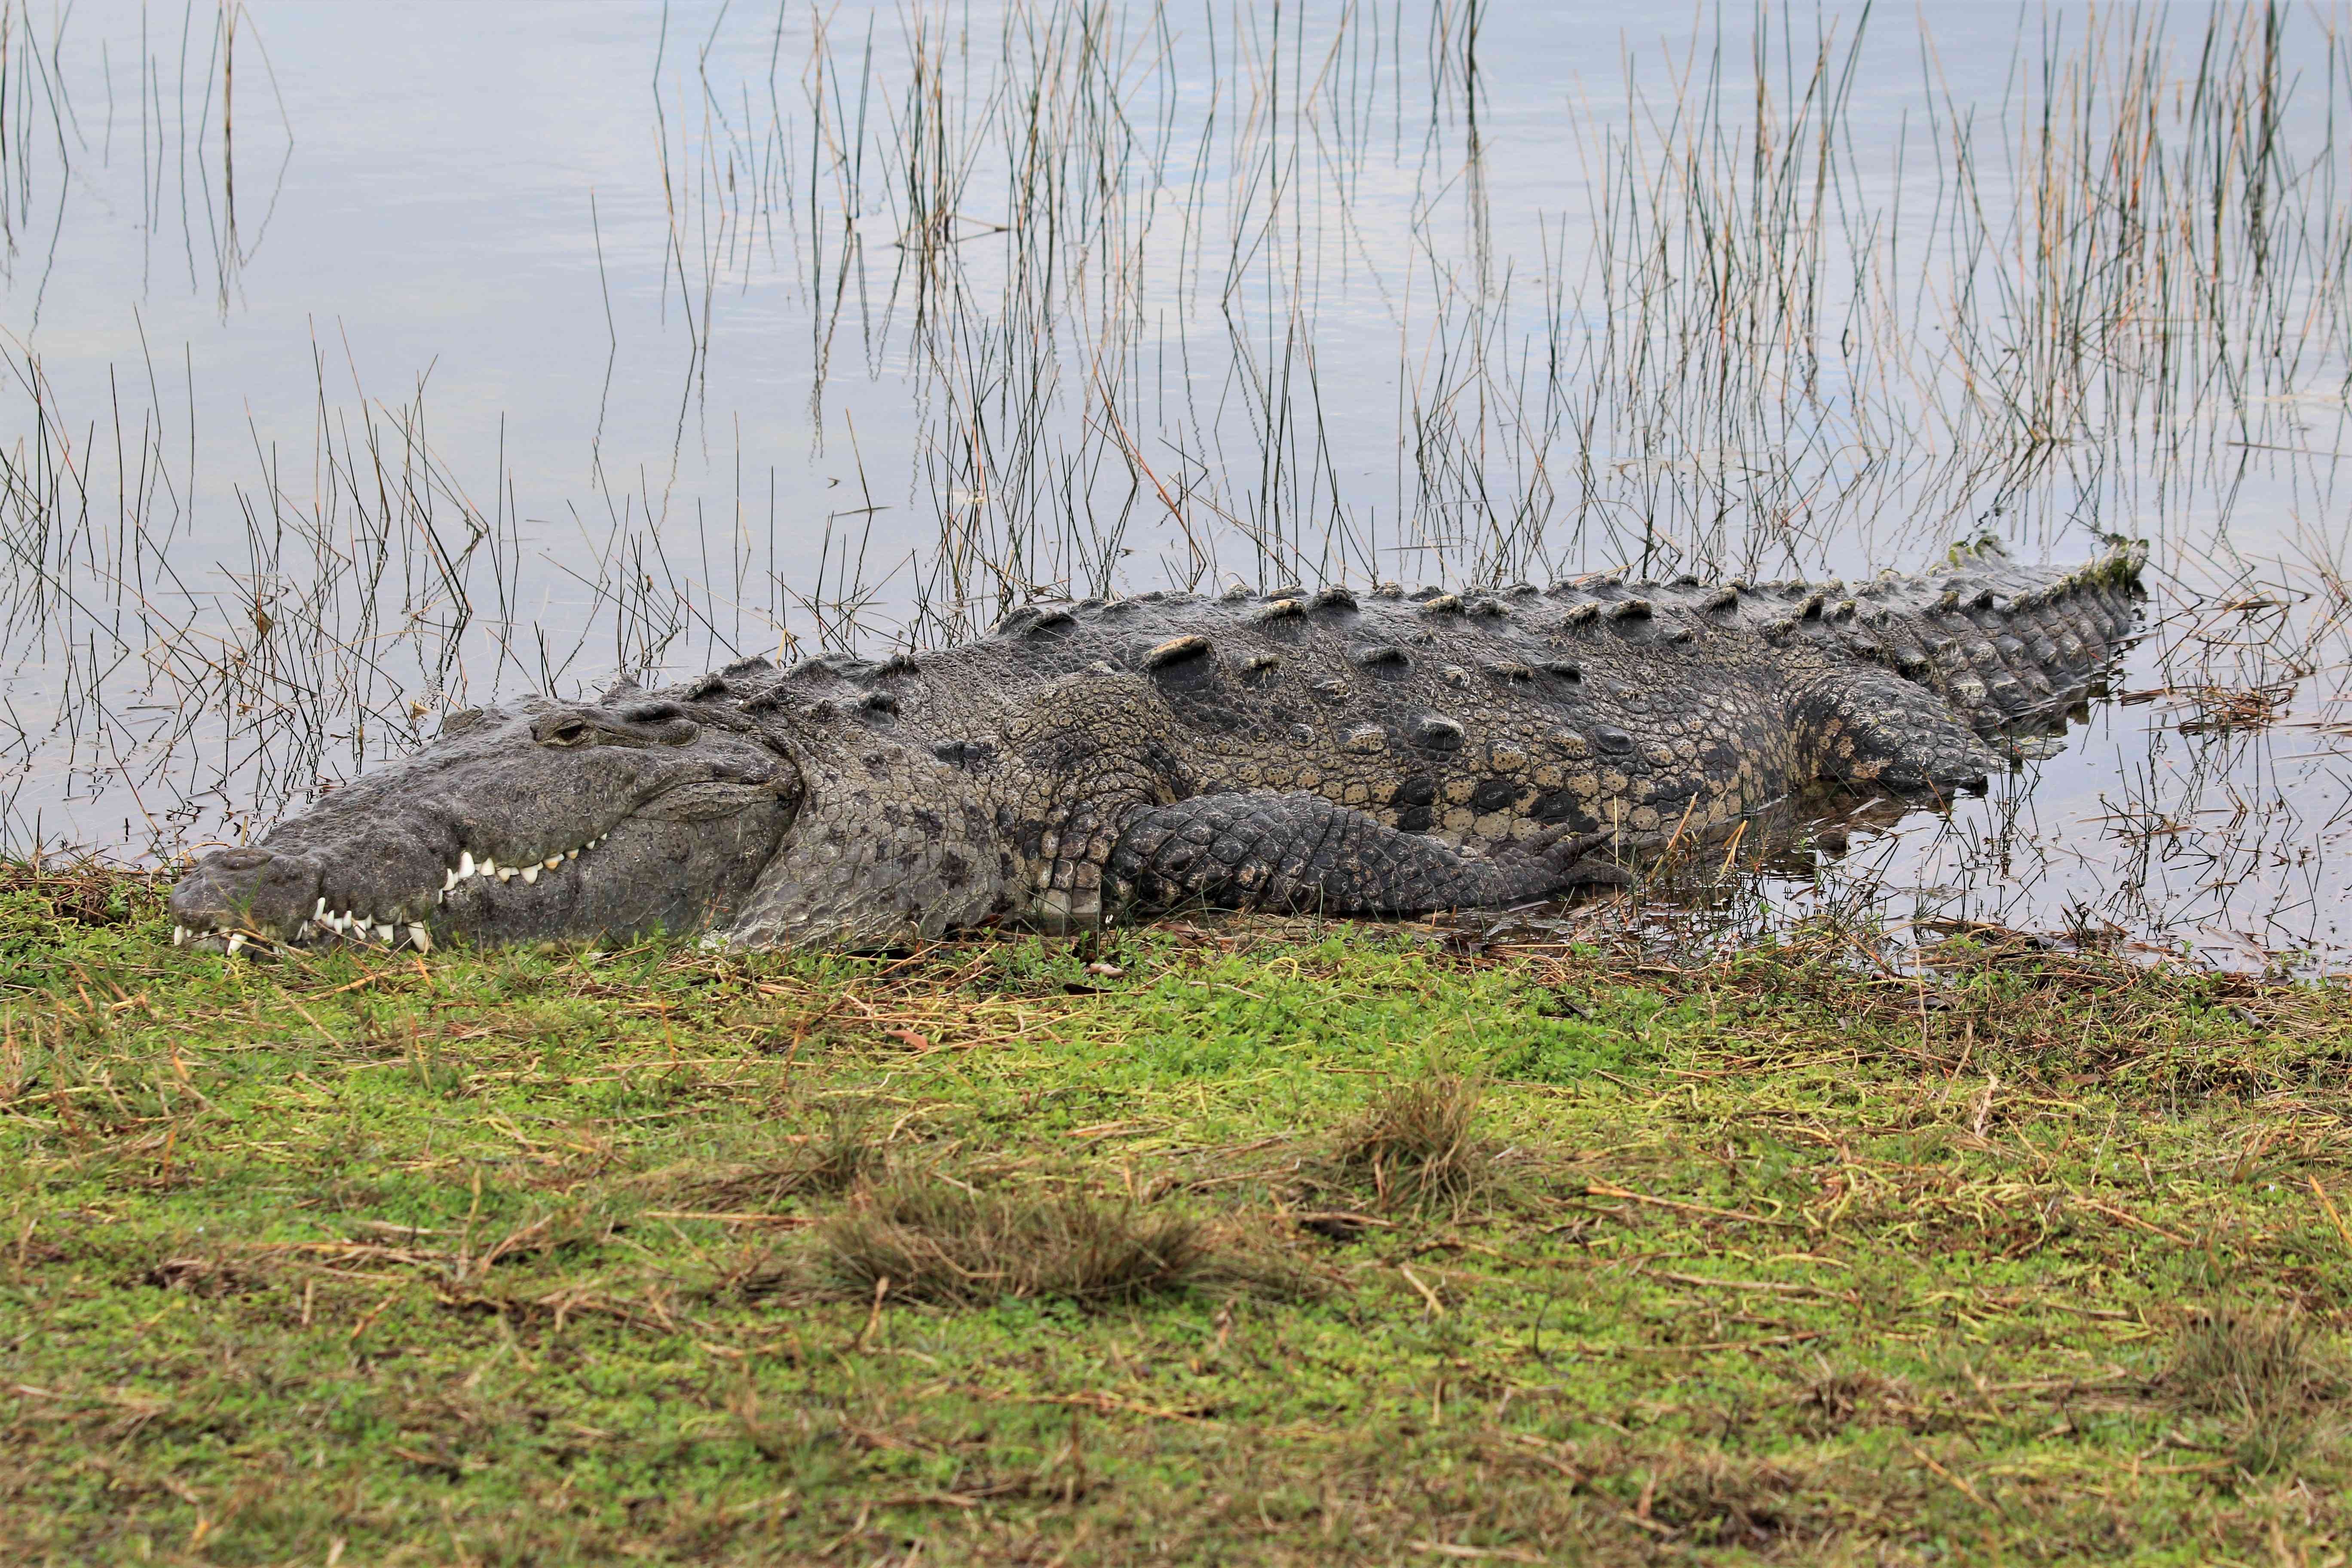 A huge crocodile